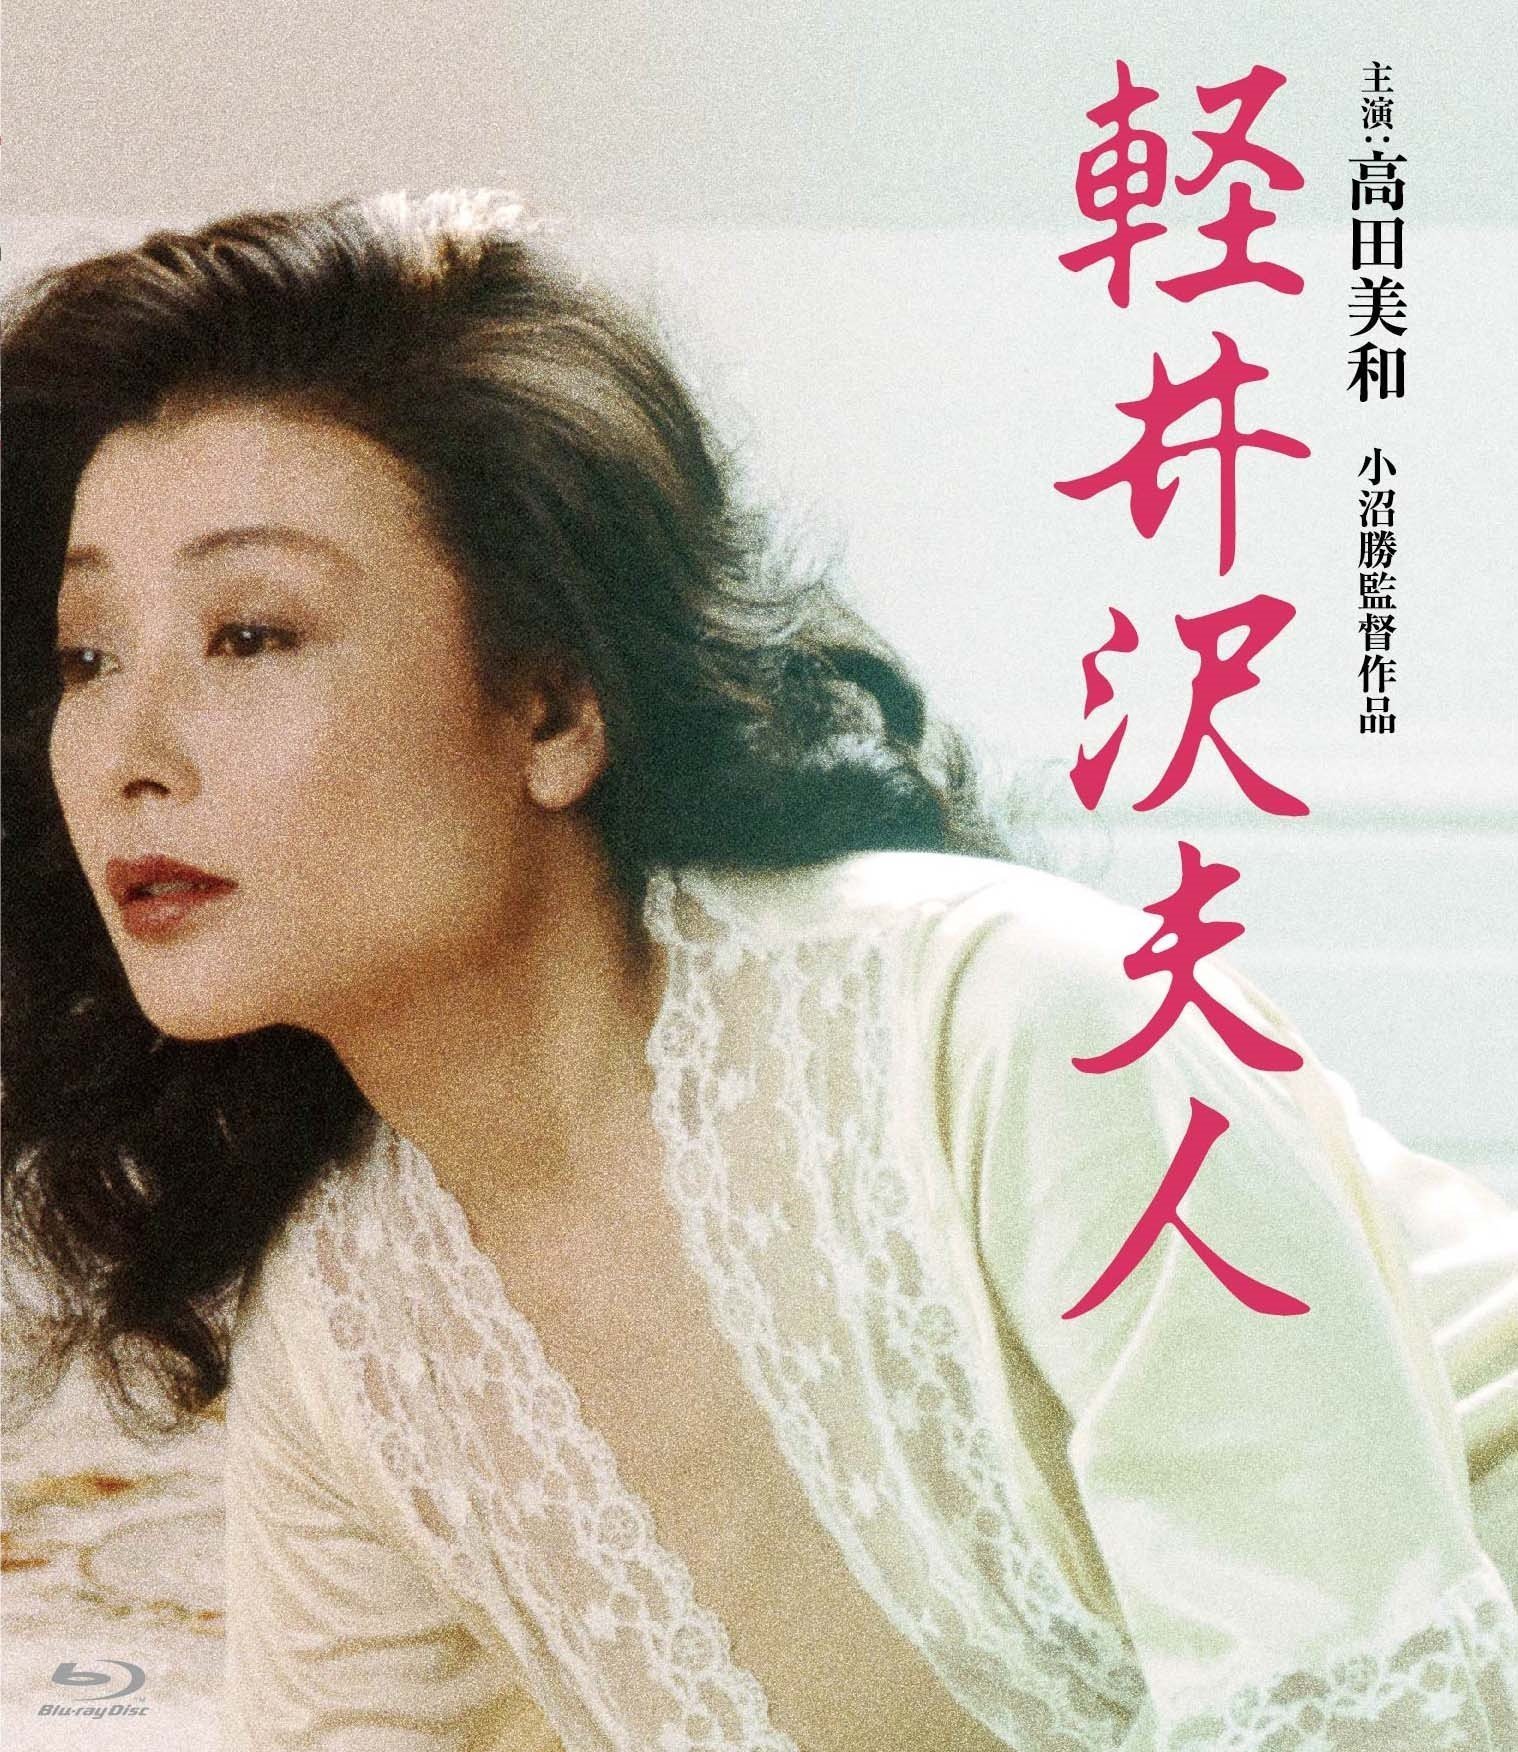 轻井泽夫人 / Karuizawa fujin[日版蓝光原盘][DIY正片.简繁字幕]  Lady Karuizawa 1982 JPN Blu-ray 1080p AVC TrueHD 2.0-blucook#398@CHDBits  [21.32 GB]